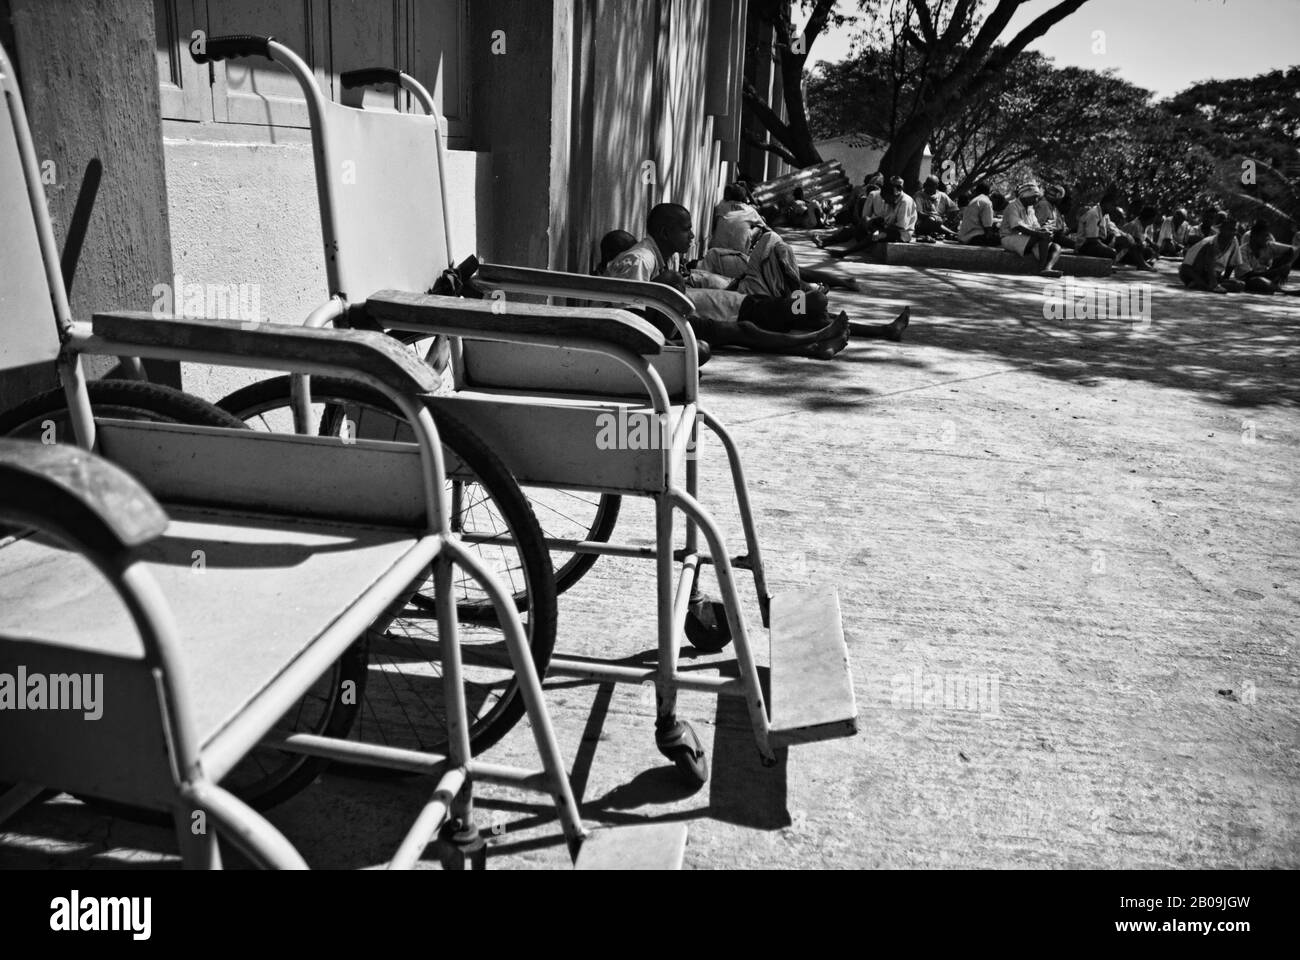 Zwei der ganz wenigen Rollstühle außerhalb eines der Wards im Betgars' Home an der Magadi Road, Bangalore. Obwohl es offiziell 289 Insassen gibt, gibt es inoffiziell mehr als 300 davon. Bangalore, Karnataka, Indien. Dezember 2010. Eines der Bilder aus der Fotogeschichte, Die Armut Kriminalisiert, von Ayush Ranka. Stockfoto